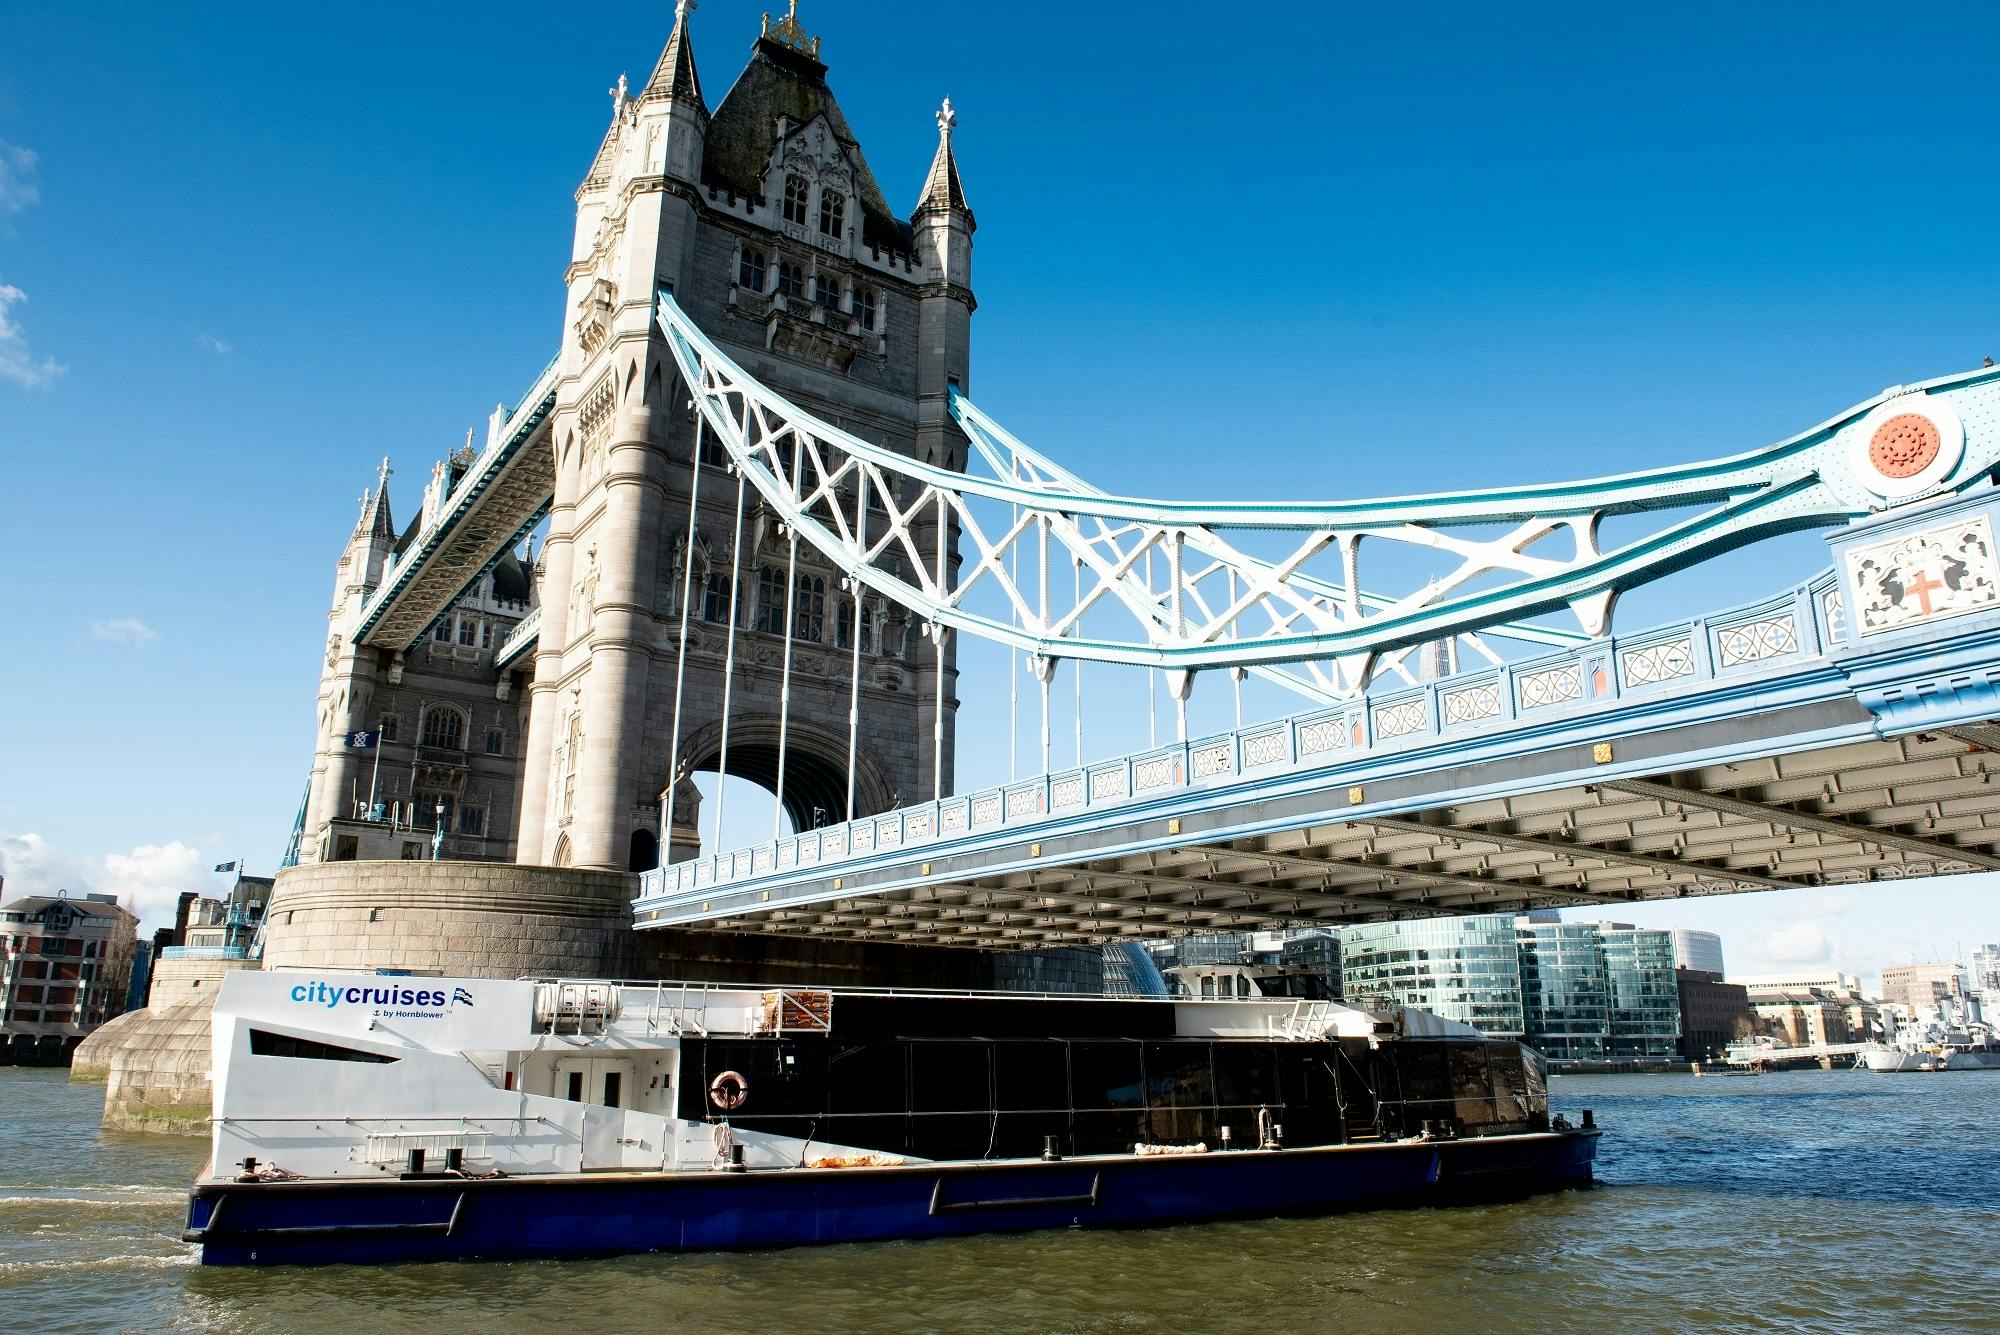 London 24 hour river pass tickets Musement